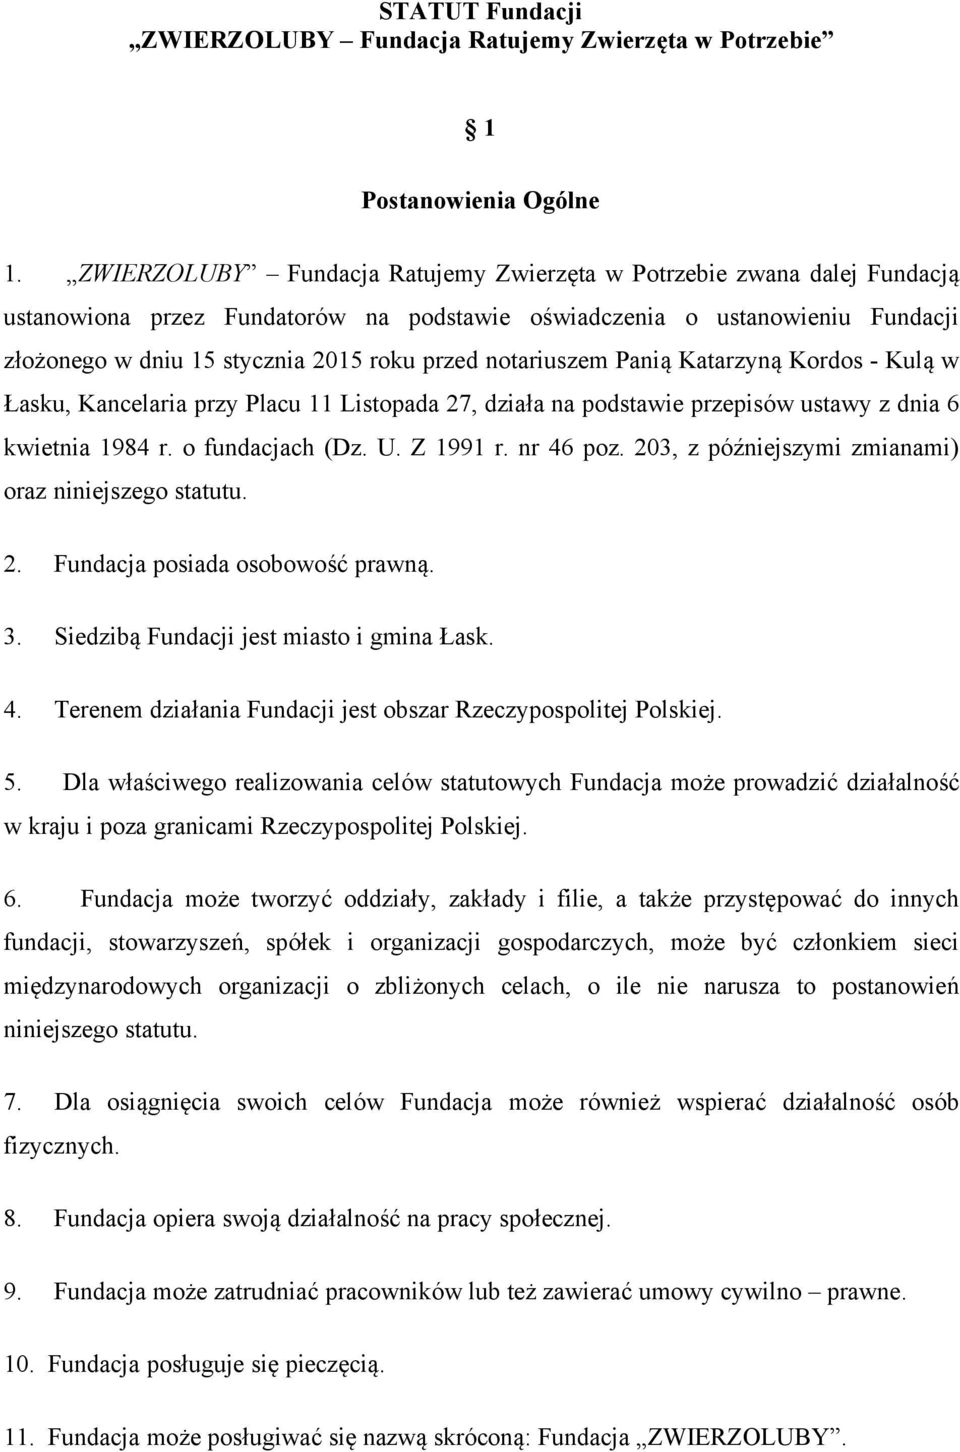 notariuszem Panią Katarzyną Kordos - Kulą w Łasku, Kancelaria przy Placu 11 Listopada 27, działa na podstawie przepisów ustawy z dnia 6 kwietnia 1984 r. o fundacjach (Dz. U. Z 1991 r. nr 46 poz.